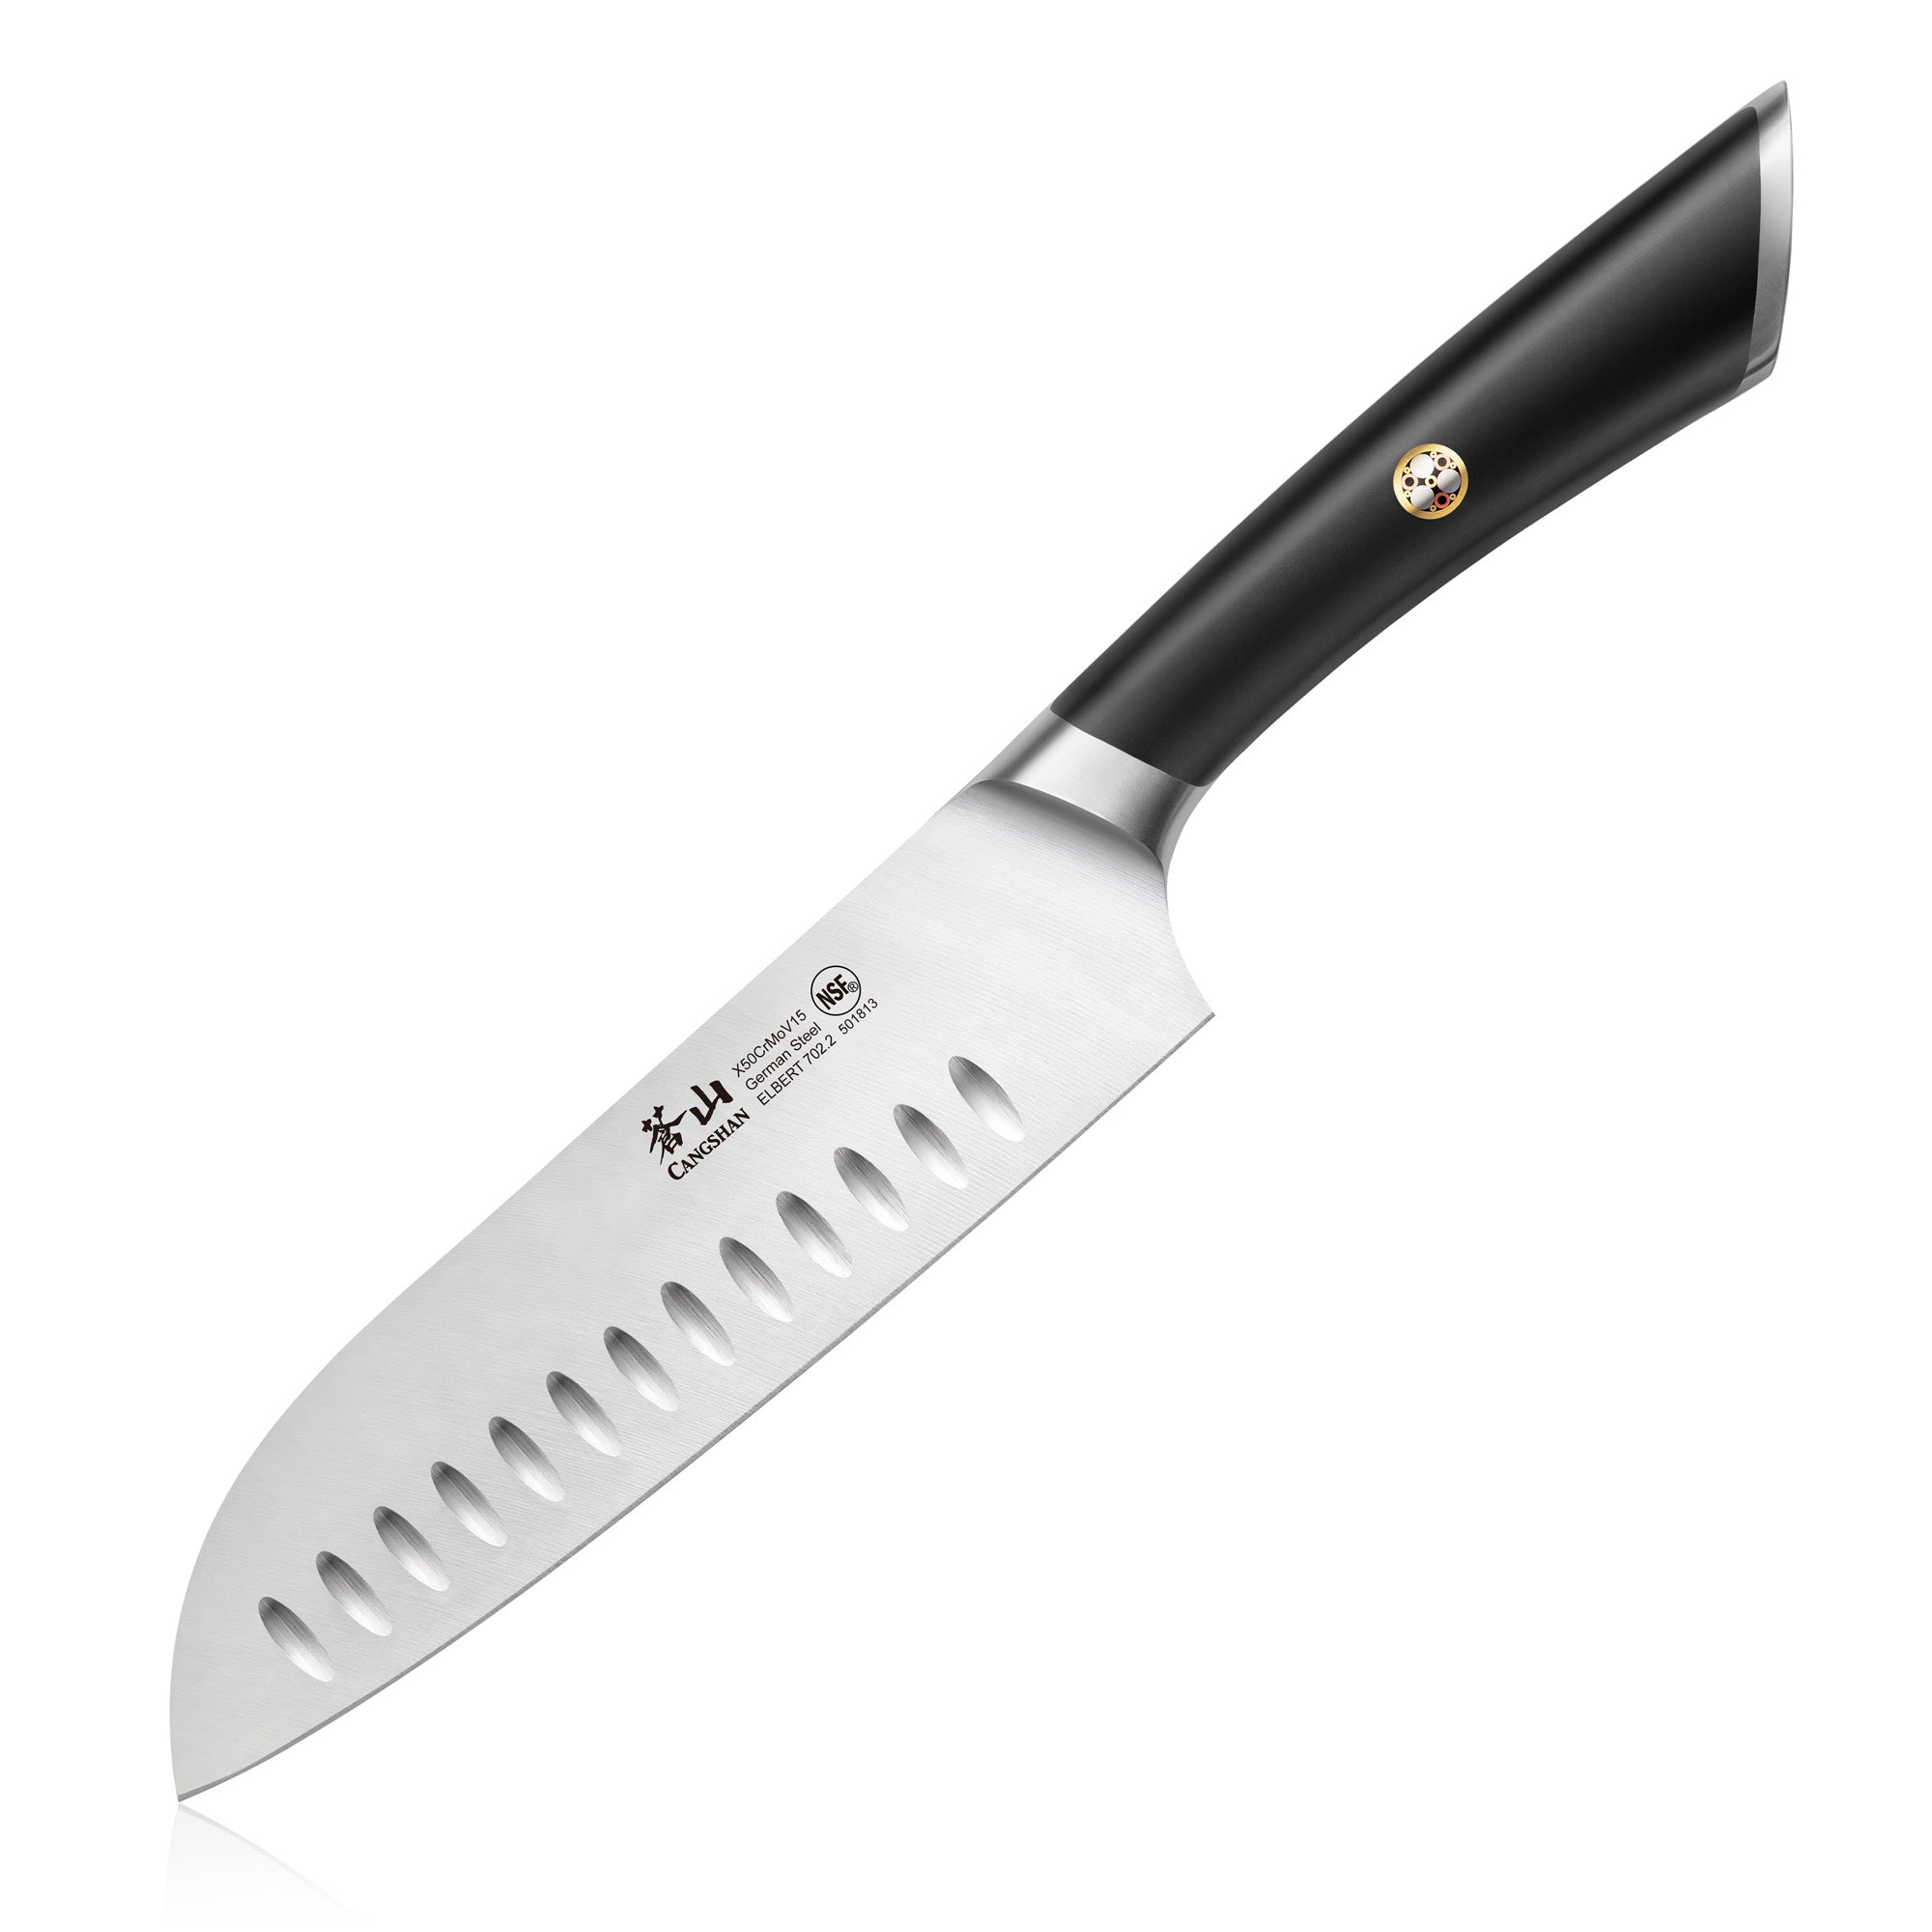 Cangshan L Series 1026894 German Steel Forged 7 Santoku Knife